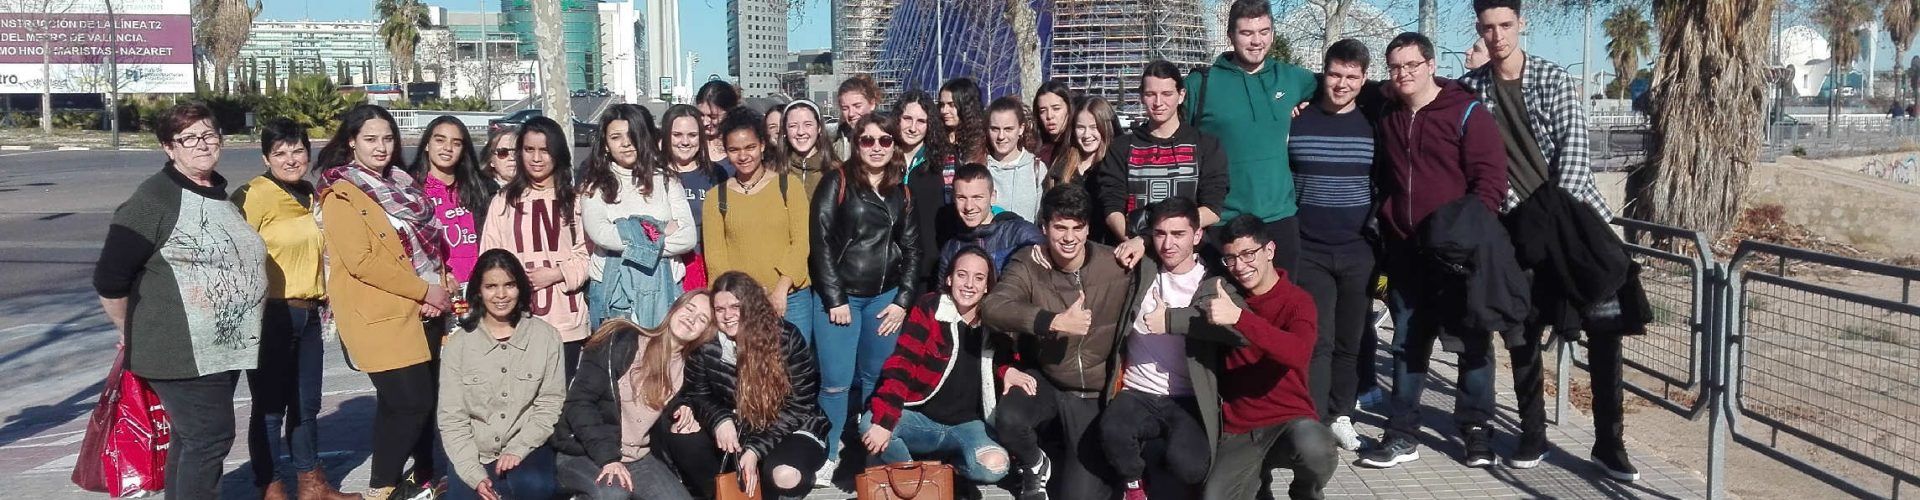 Alumnes del Joan Coromines visiten les universitats valencianes